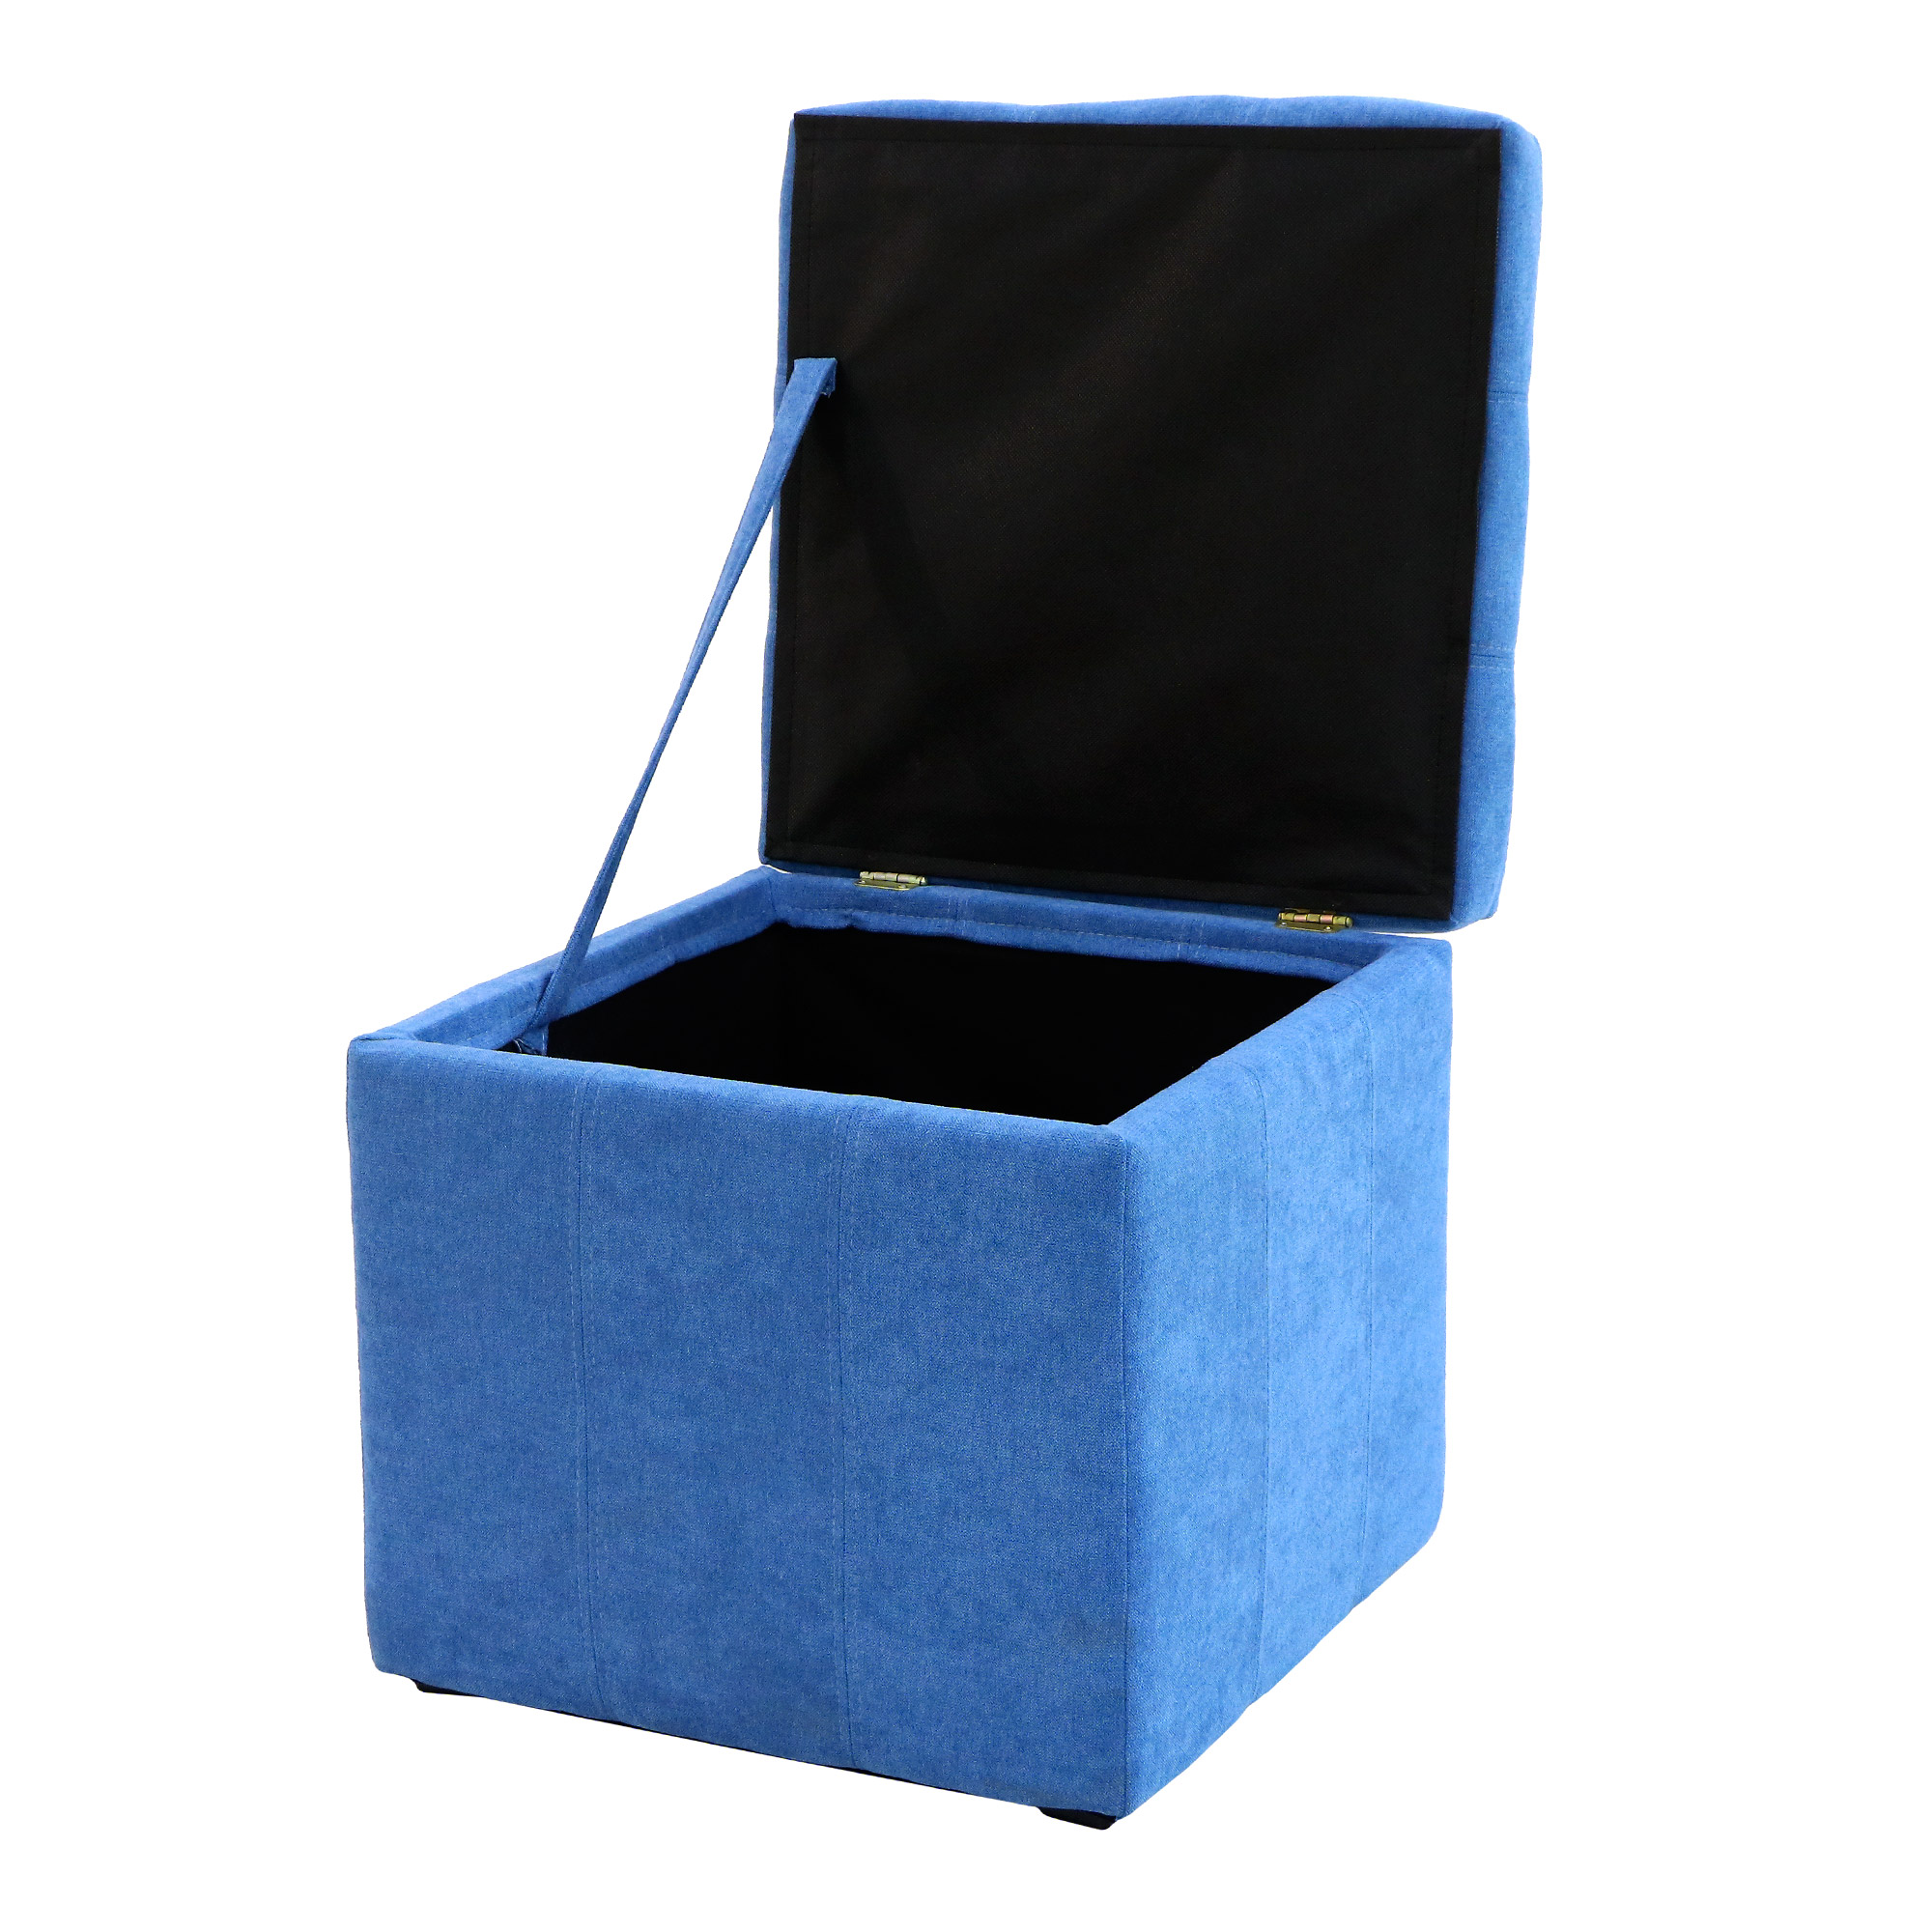 Банкетка Dreambag модерна синий велюр 46х46х46, размер 46х46х46 см - фото 3